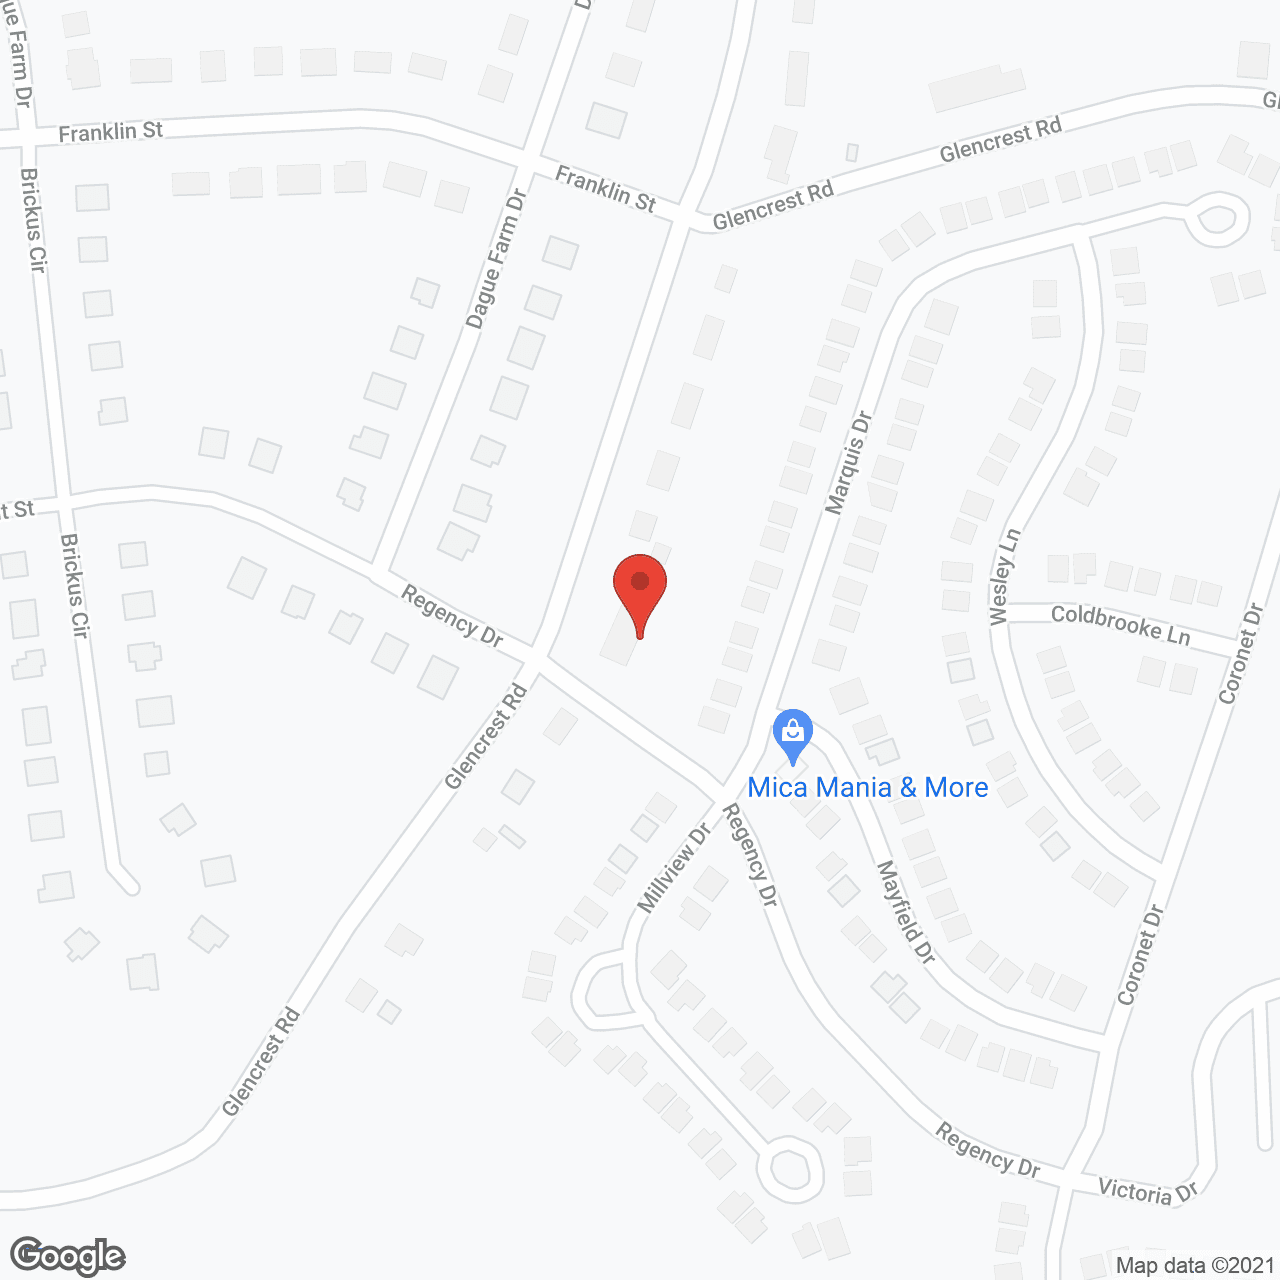 Glencrest Manor in google map